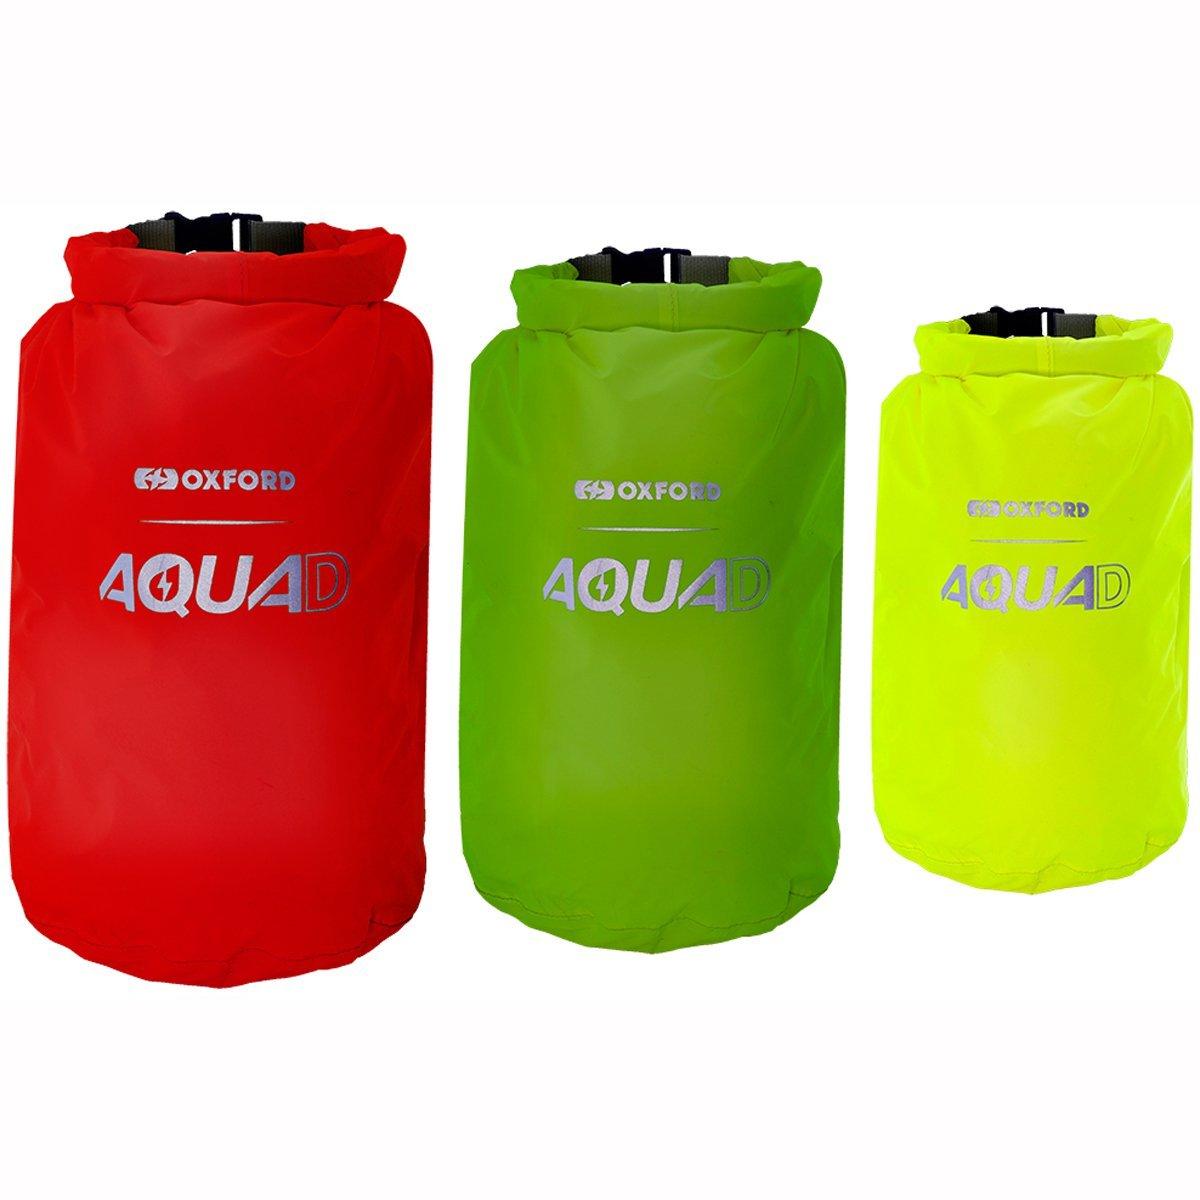 Oxford Aqua D Waterproof Roll Bags 3 Pack - 5L 7L 12L